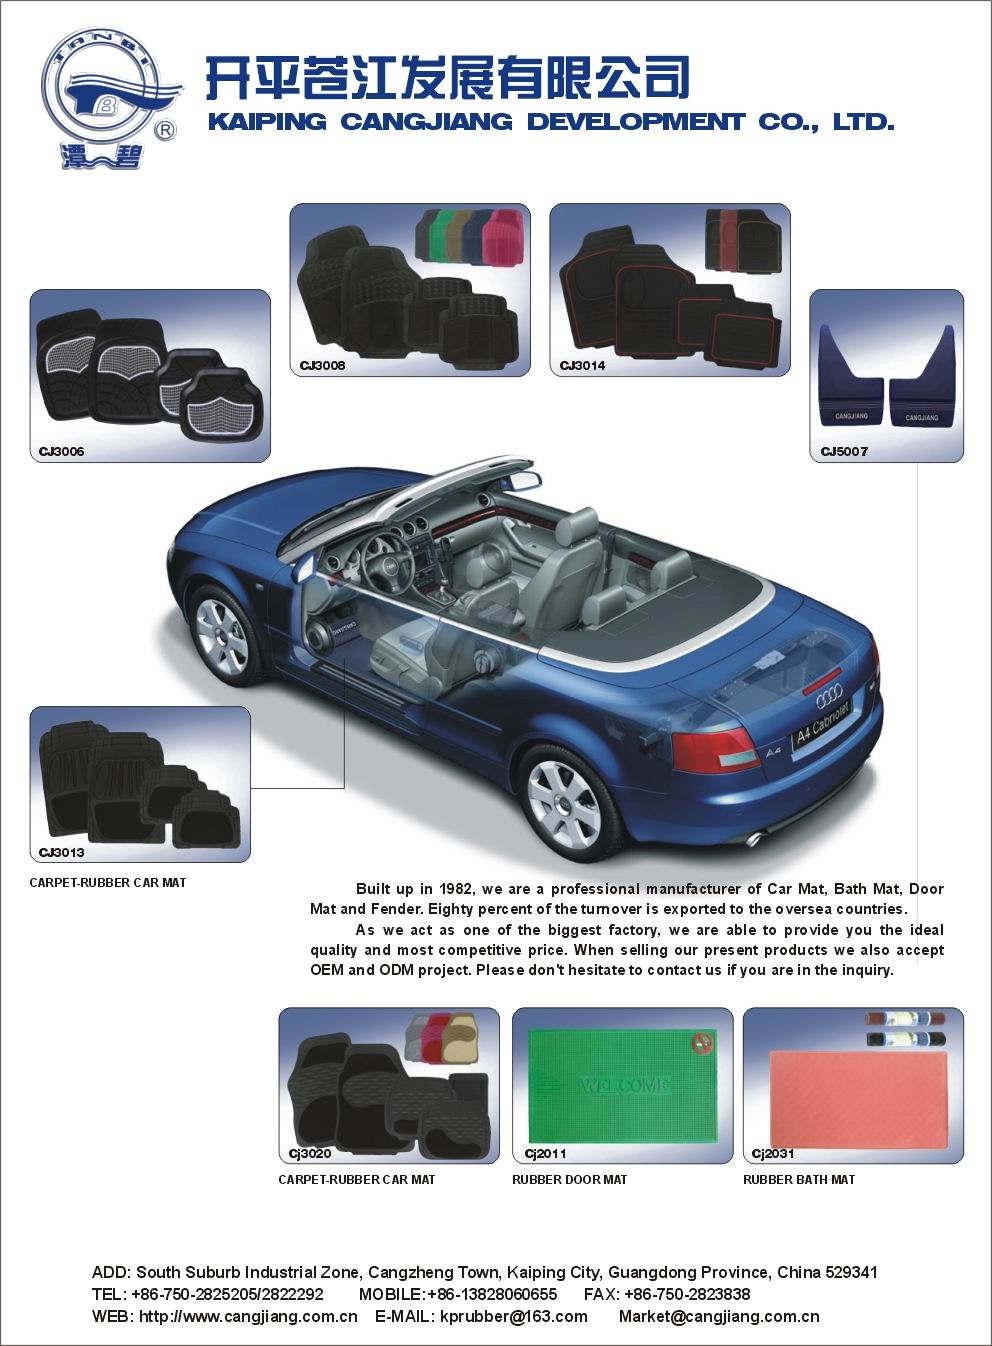 Various car mats